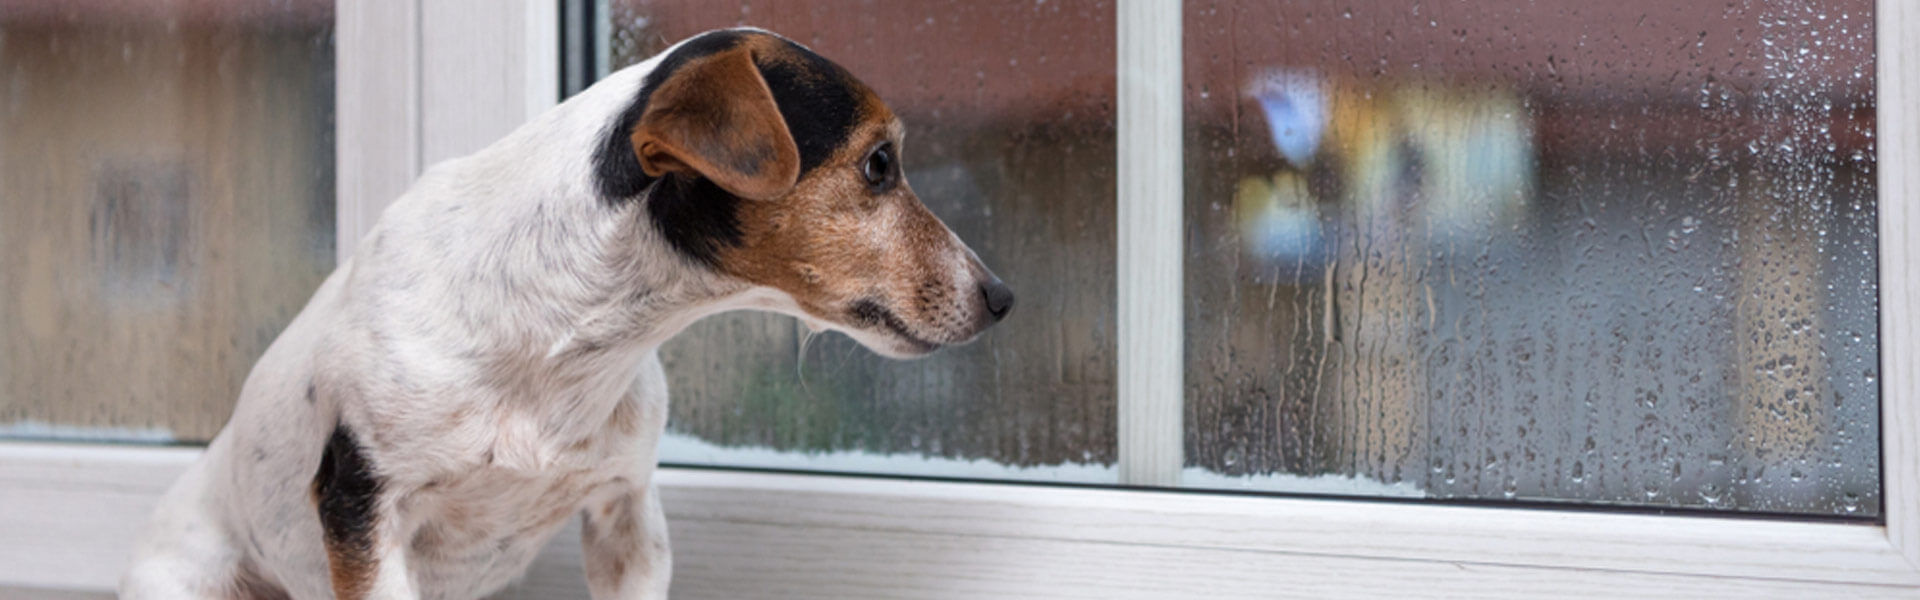 Lider hund av separationsångest? 7 effektiva för att hjälpa en